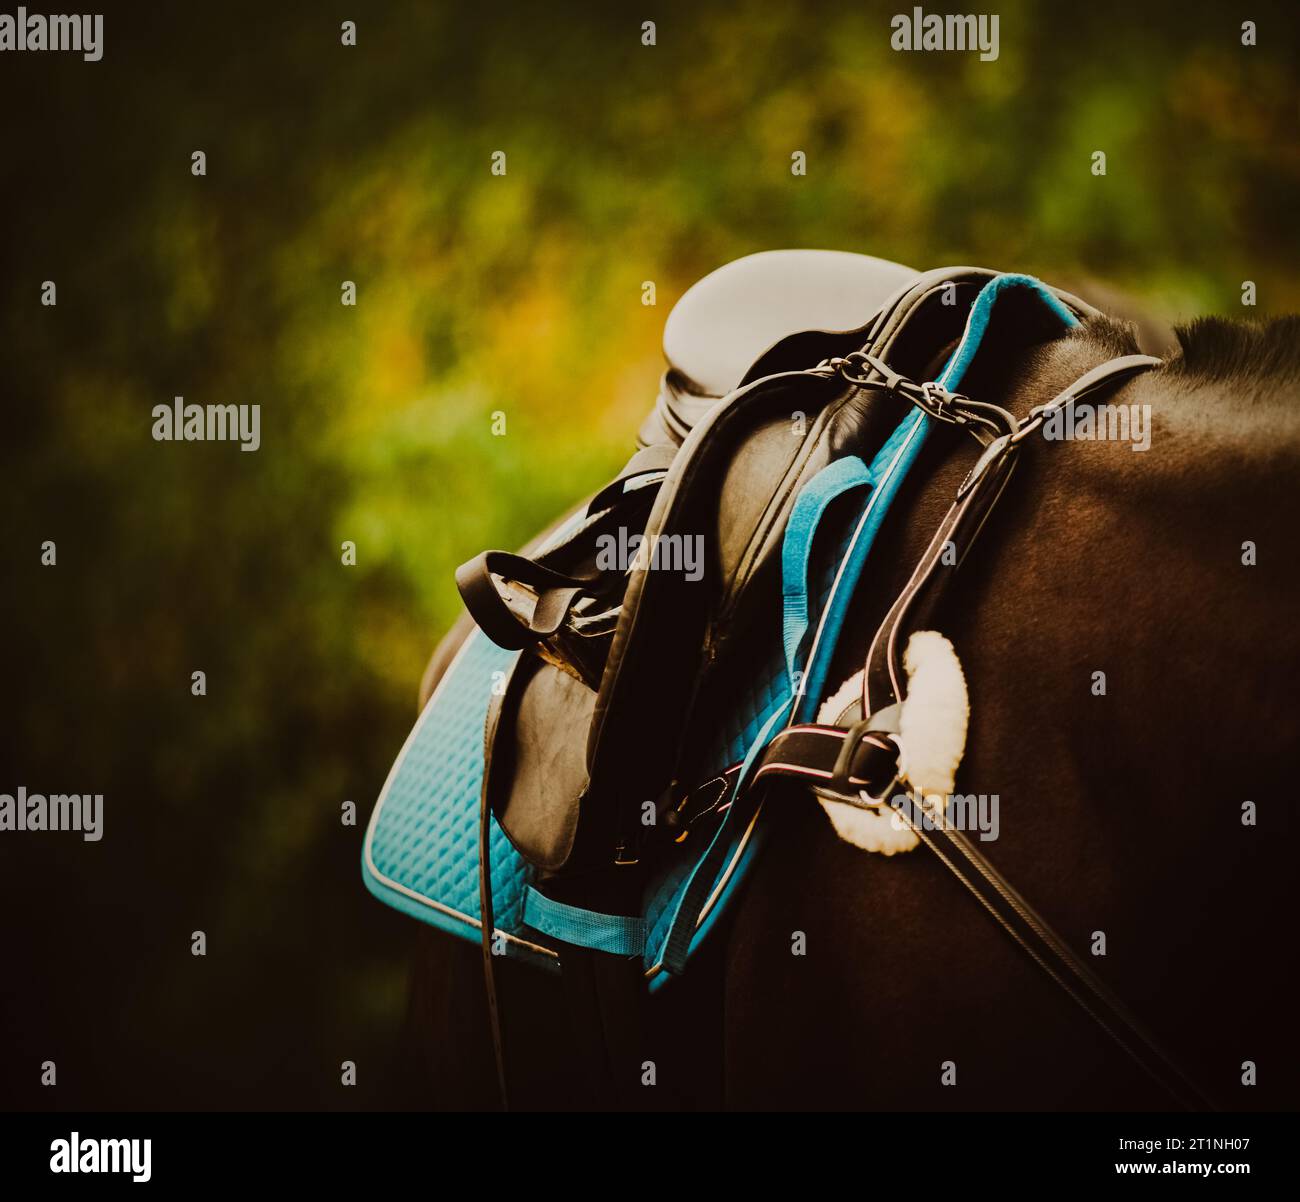 Un cavallo nero indossato con attrezzature sportive, come una sella, staffe e un pettorale. Mostra il mondo degli sport equestri e dell'equitazione Foto Stock